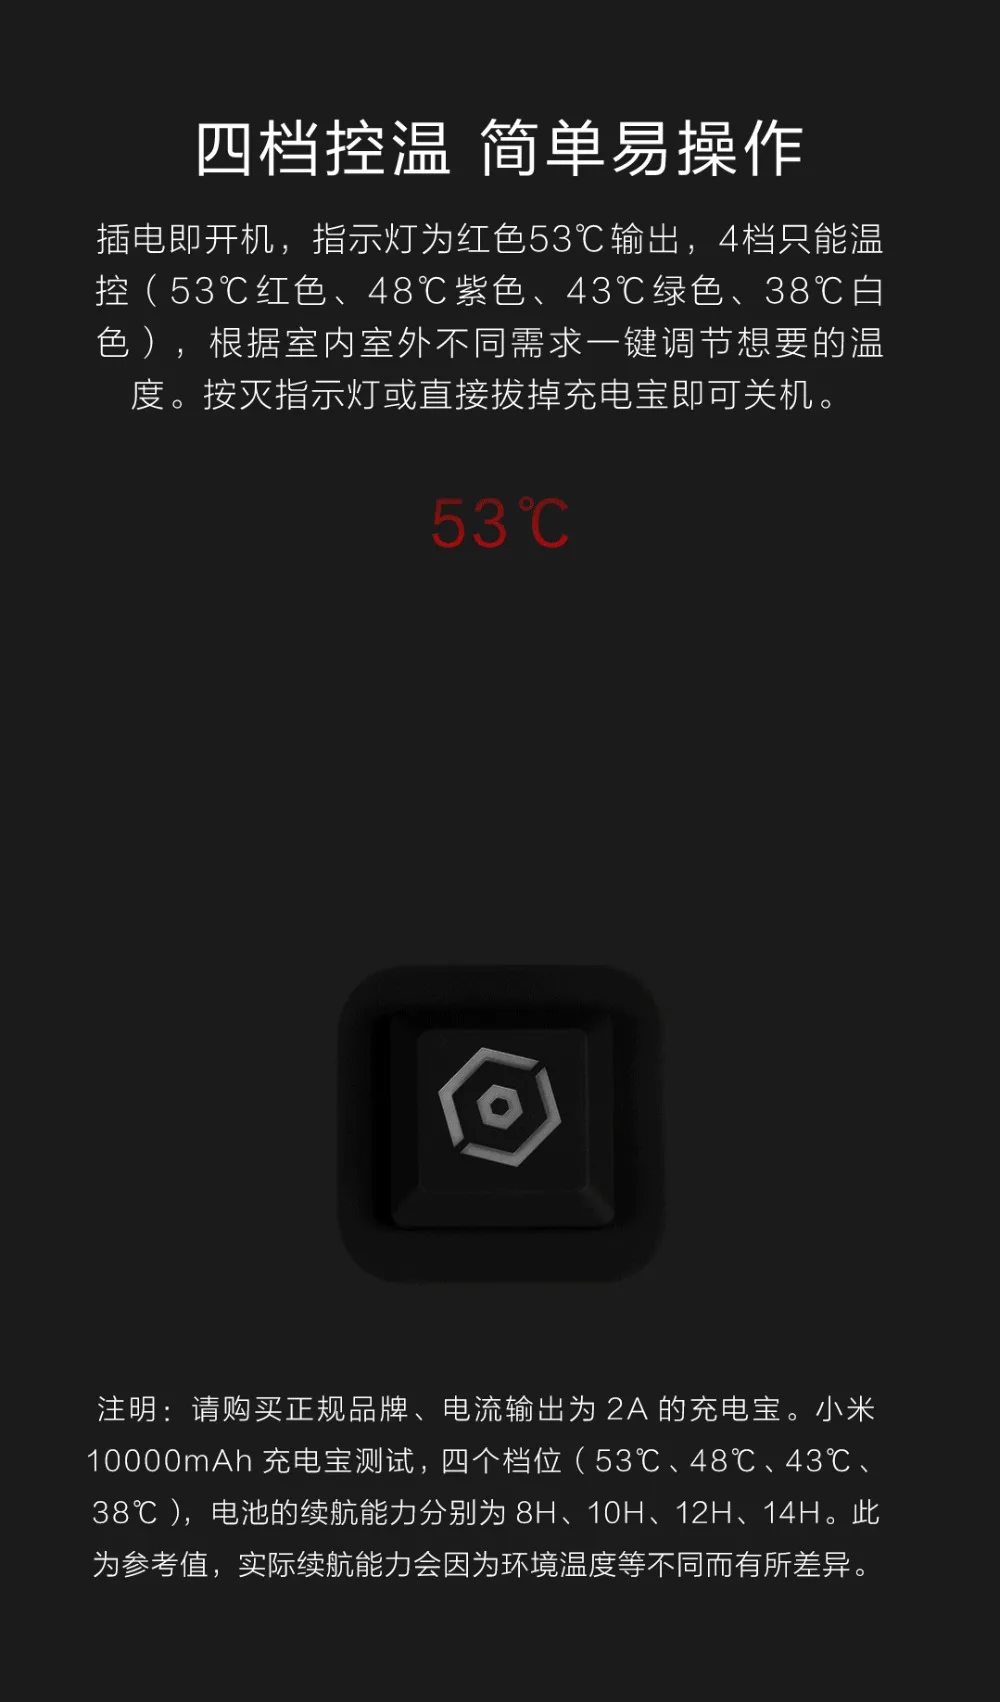 Новейший пуховик Xiaomi COTTONSMITH с контролем температуры и зарядкой от 38 до 53 градусов Цельсия